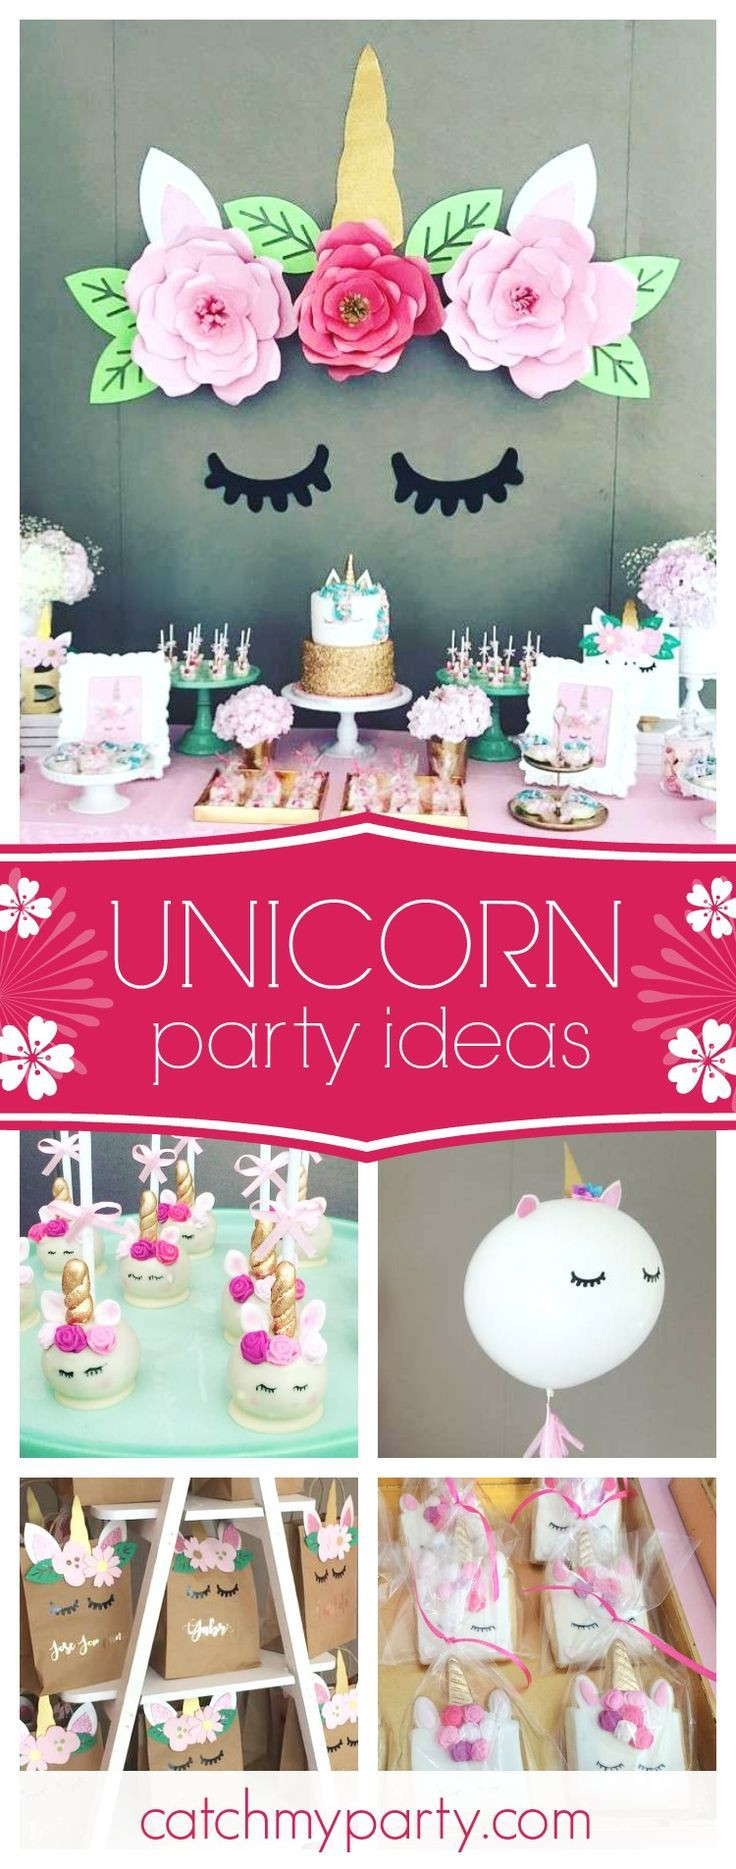 Diy Unicorn Birthday Party Ideas
 Best 25 Unicorn birthday parties ideas on Pinterest